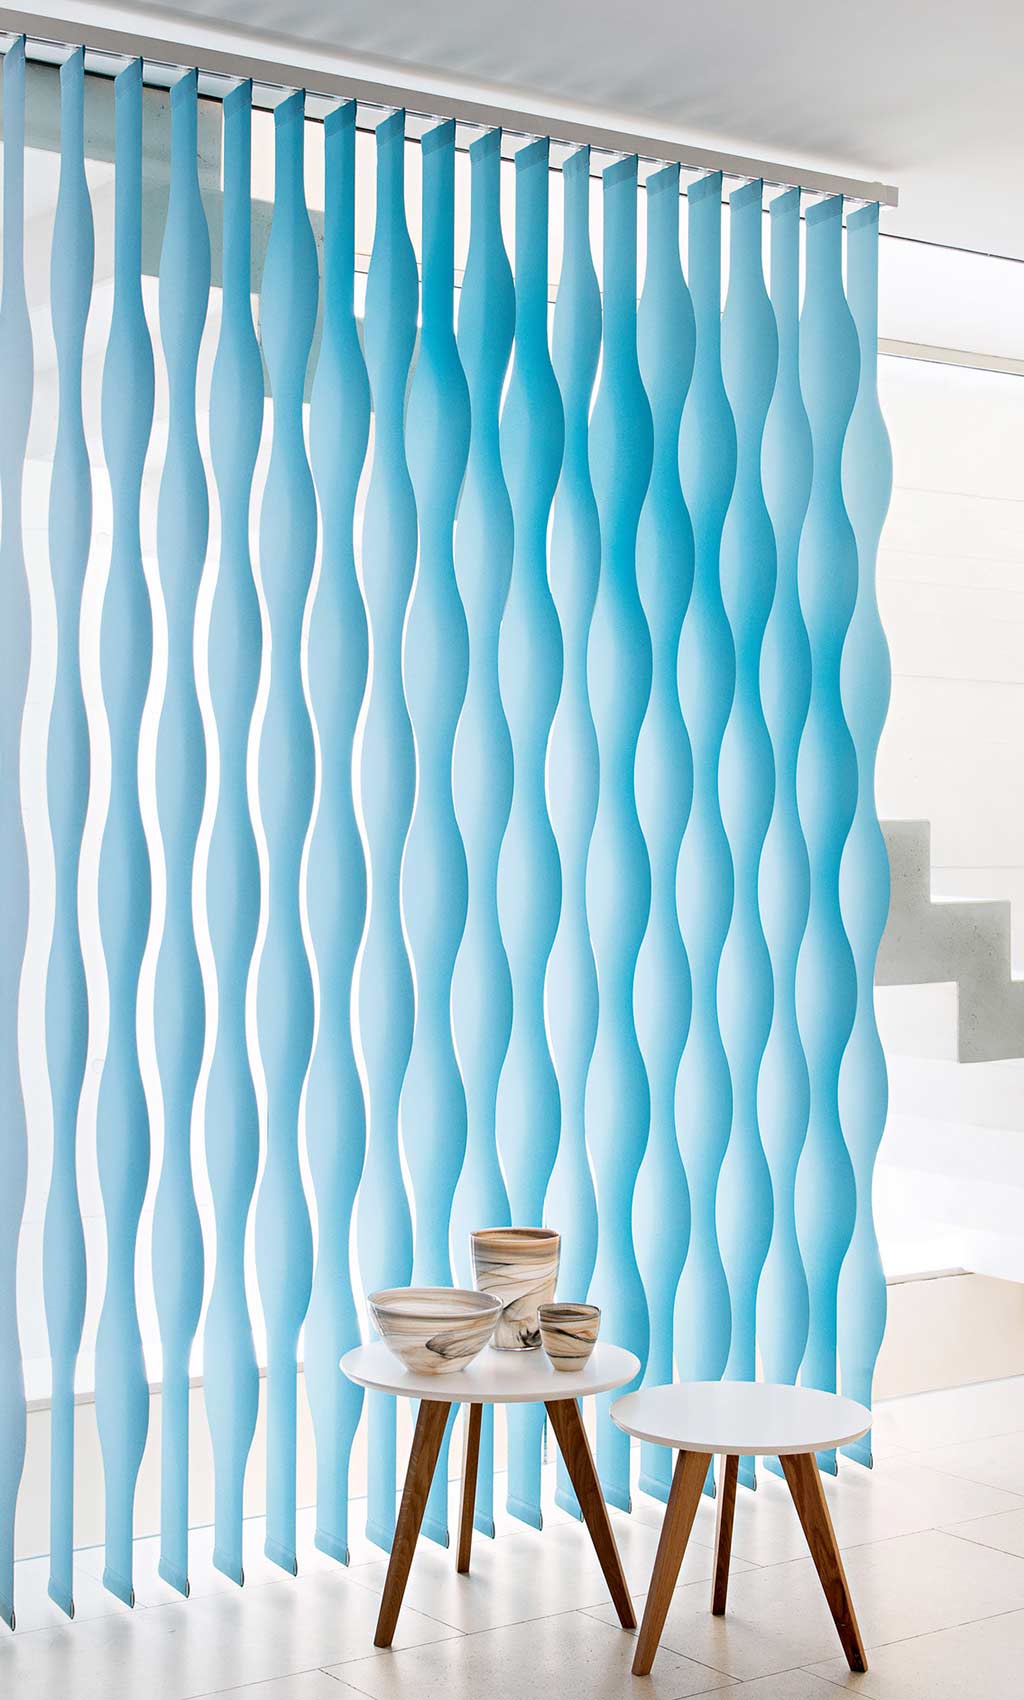 Light blue vertical wave blinds